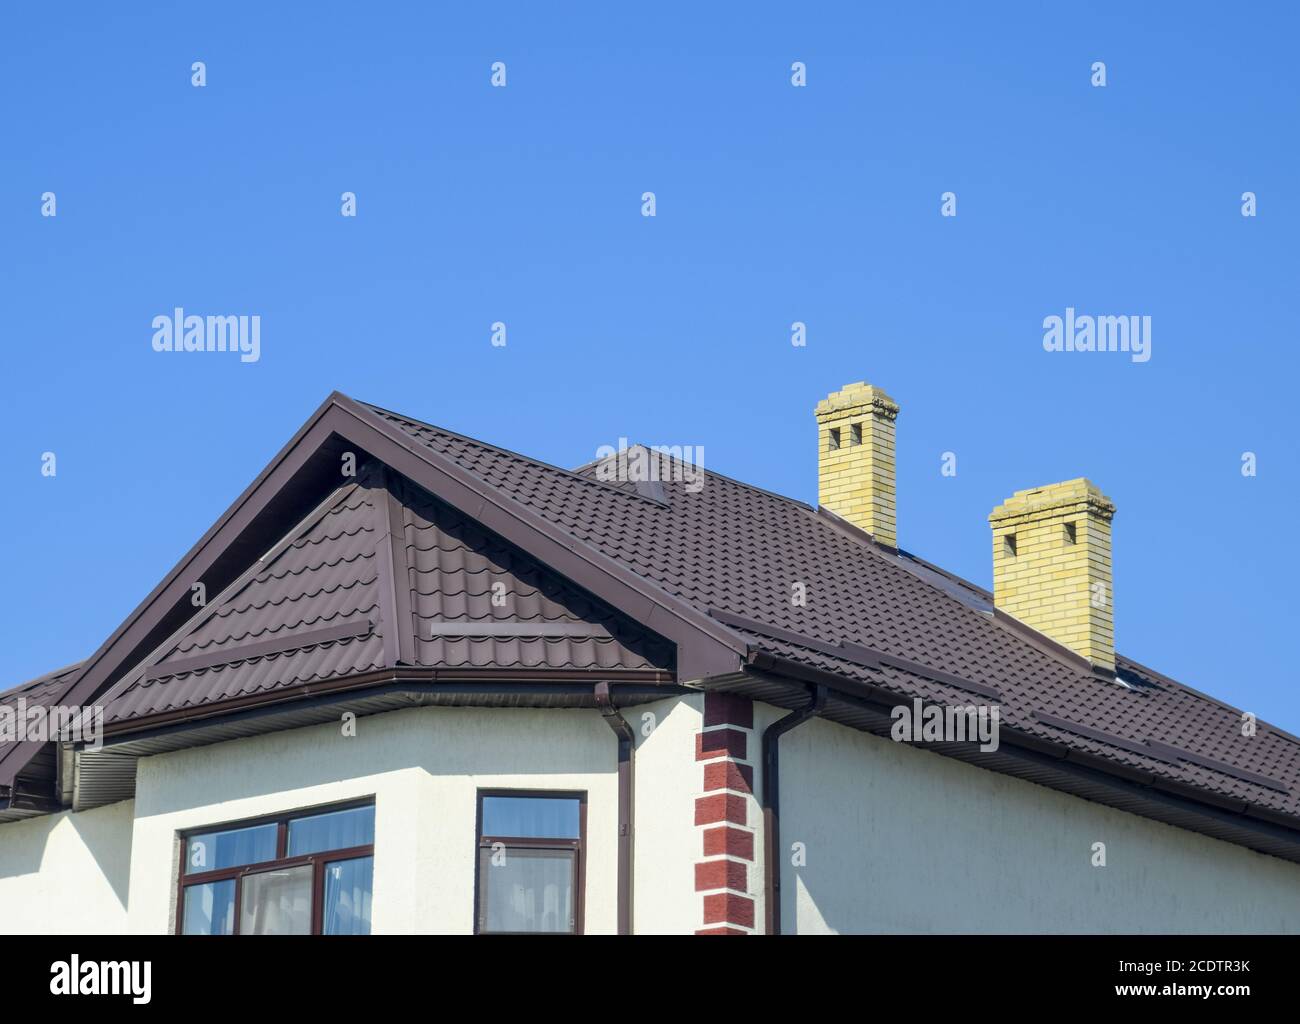 Chambre avec fenêtres en PVC et toiture de tôle ondulée. Roofing d'un profil en métal de forme ondulée sur la chambre avec fenêtres en plastique Banque D'Images